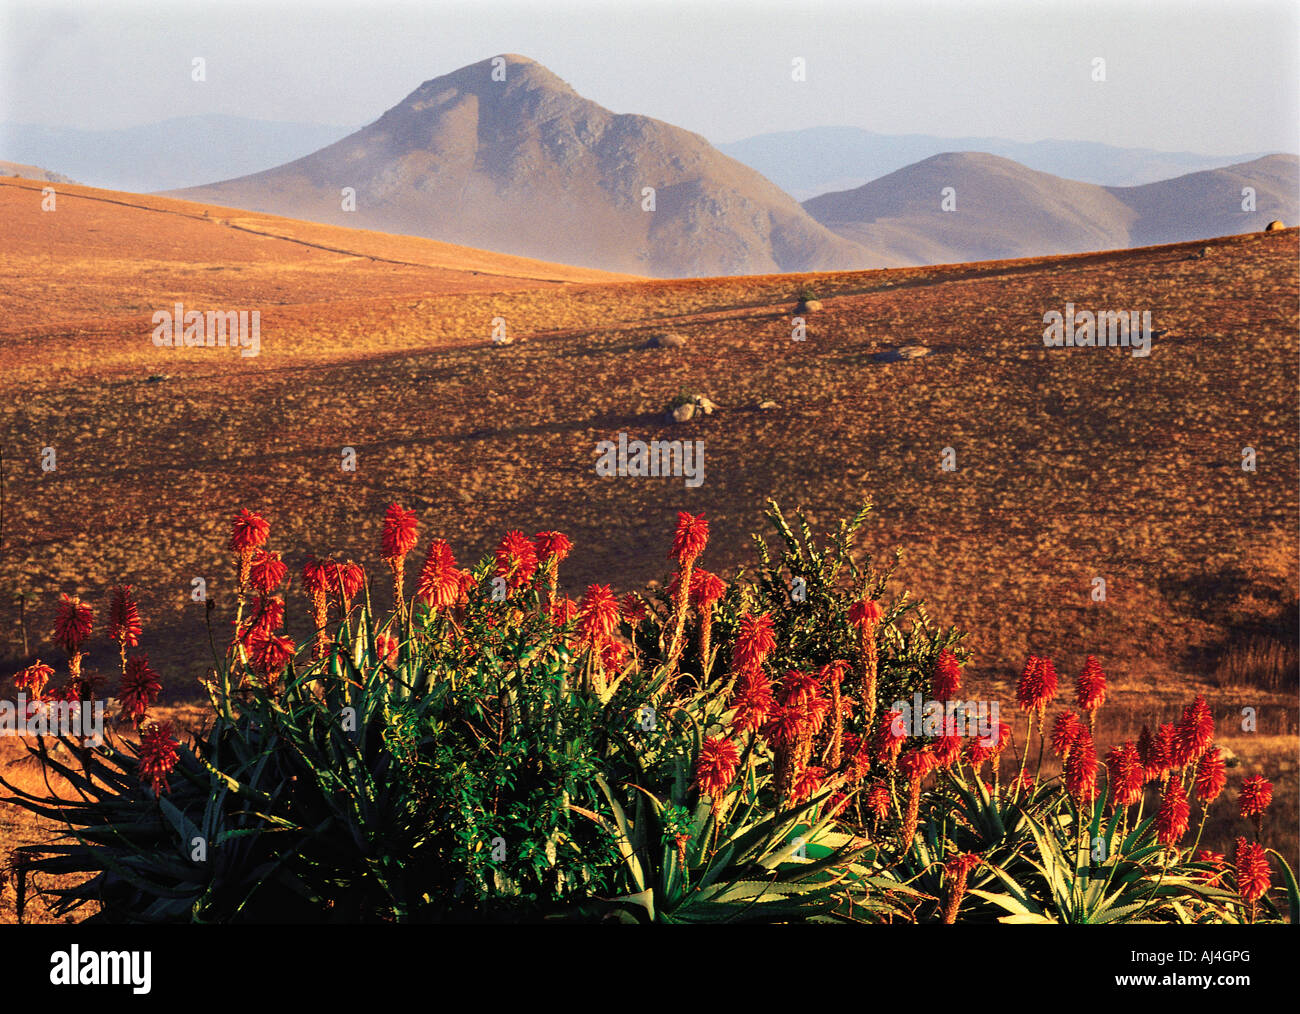 Dans l'Aloes rouge Jeu Malolotja Réserver Swaziland Afrique du sud des hautes terres de la montagne en arrière-plan Banque D'Images